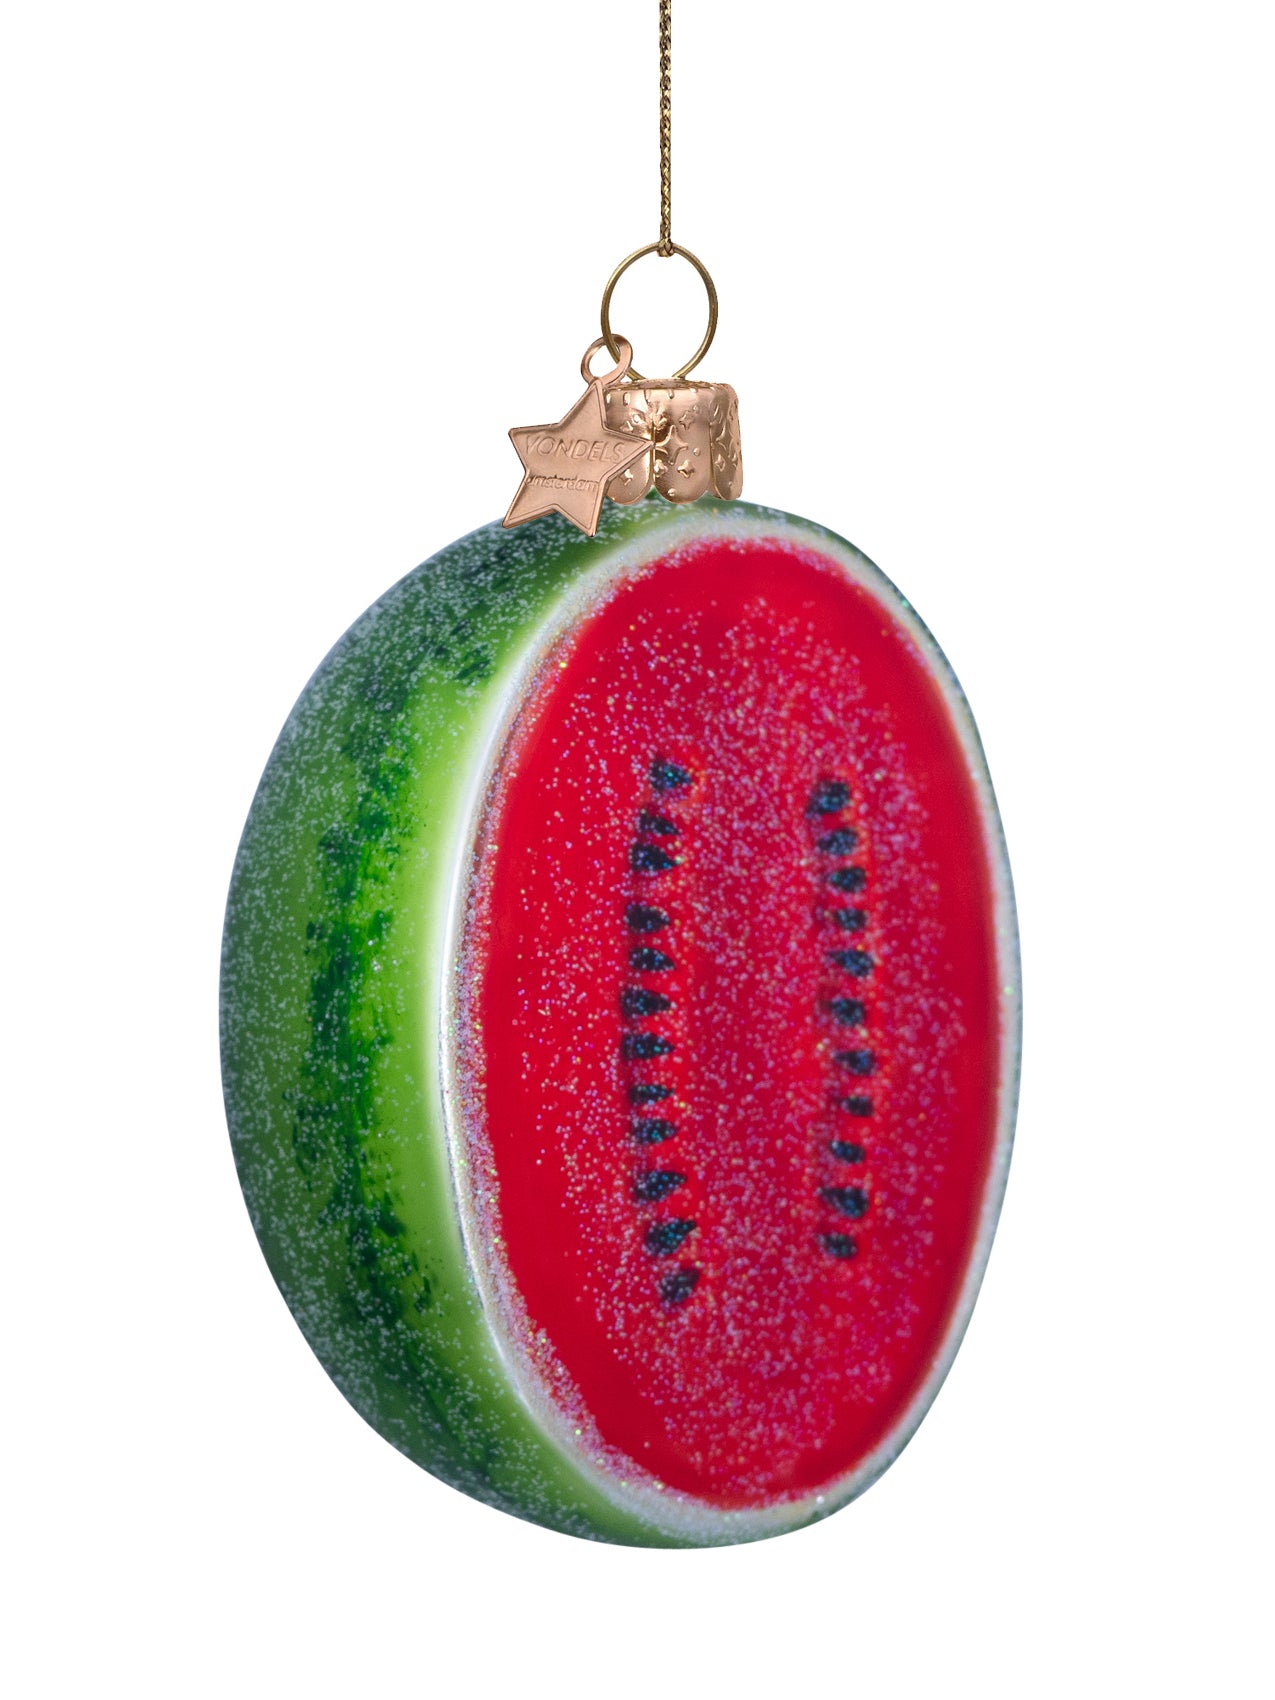 Watermelon glass ornament (10 cm)